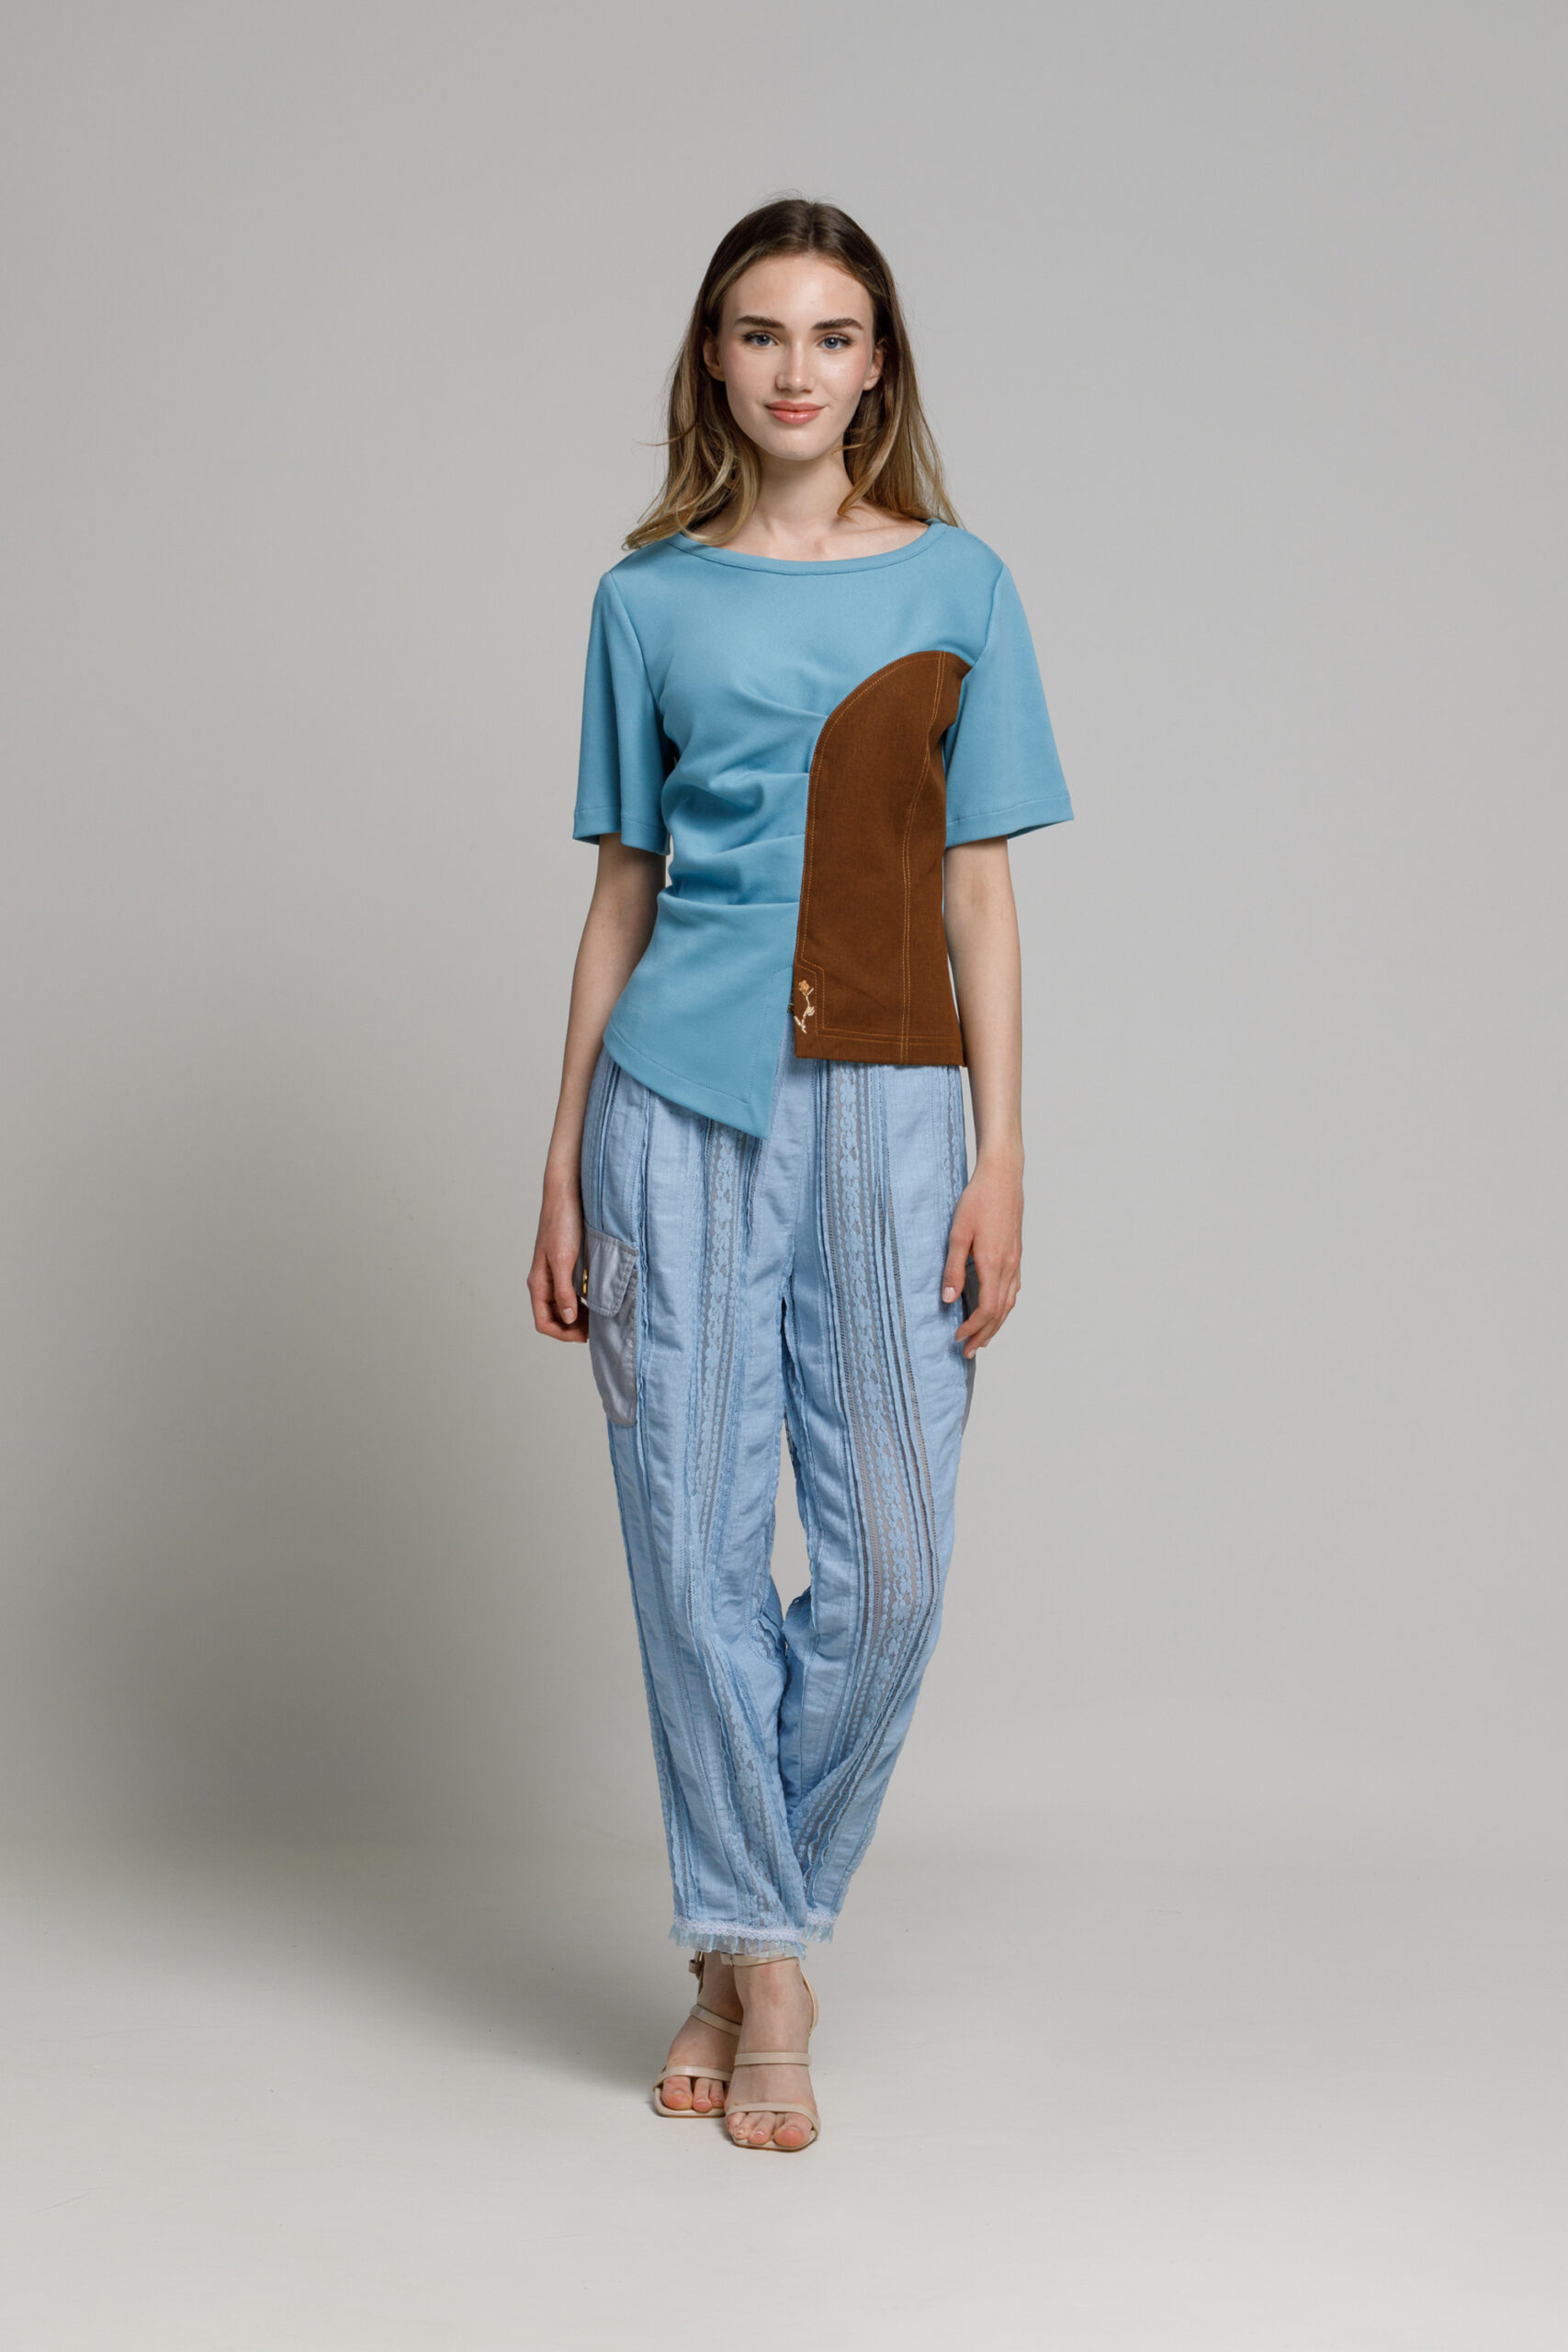 Bluza CHIARA bleu. Materiale naturale, design unicat, cu broderie si aplicatii handmade